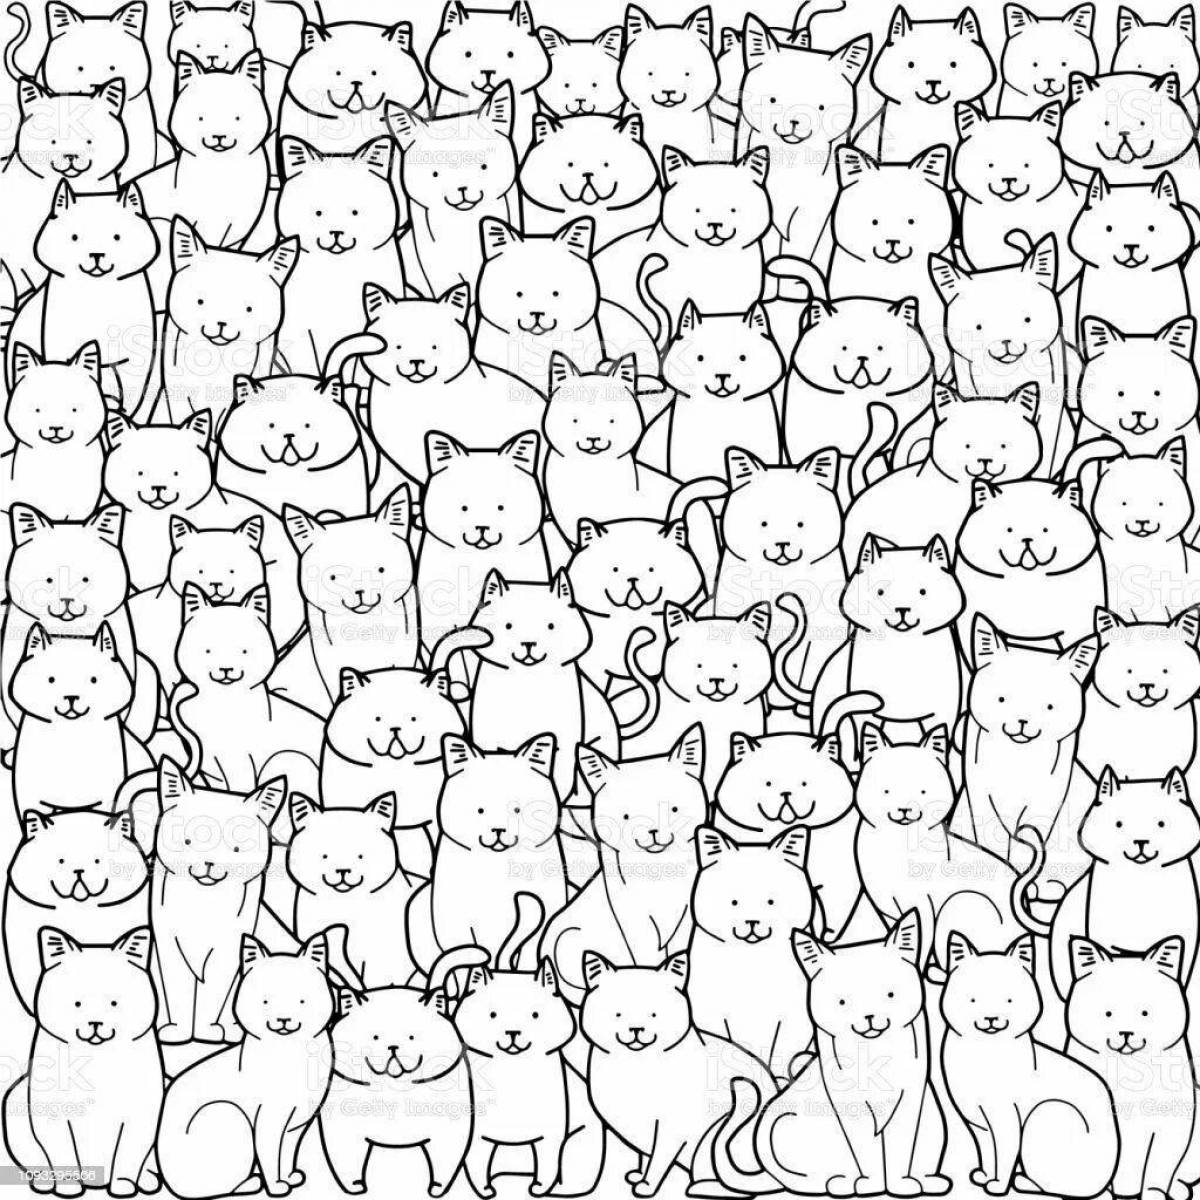 Веселое много котиков на одной странице